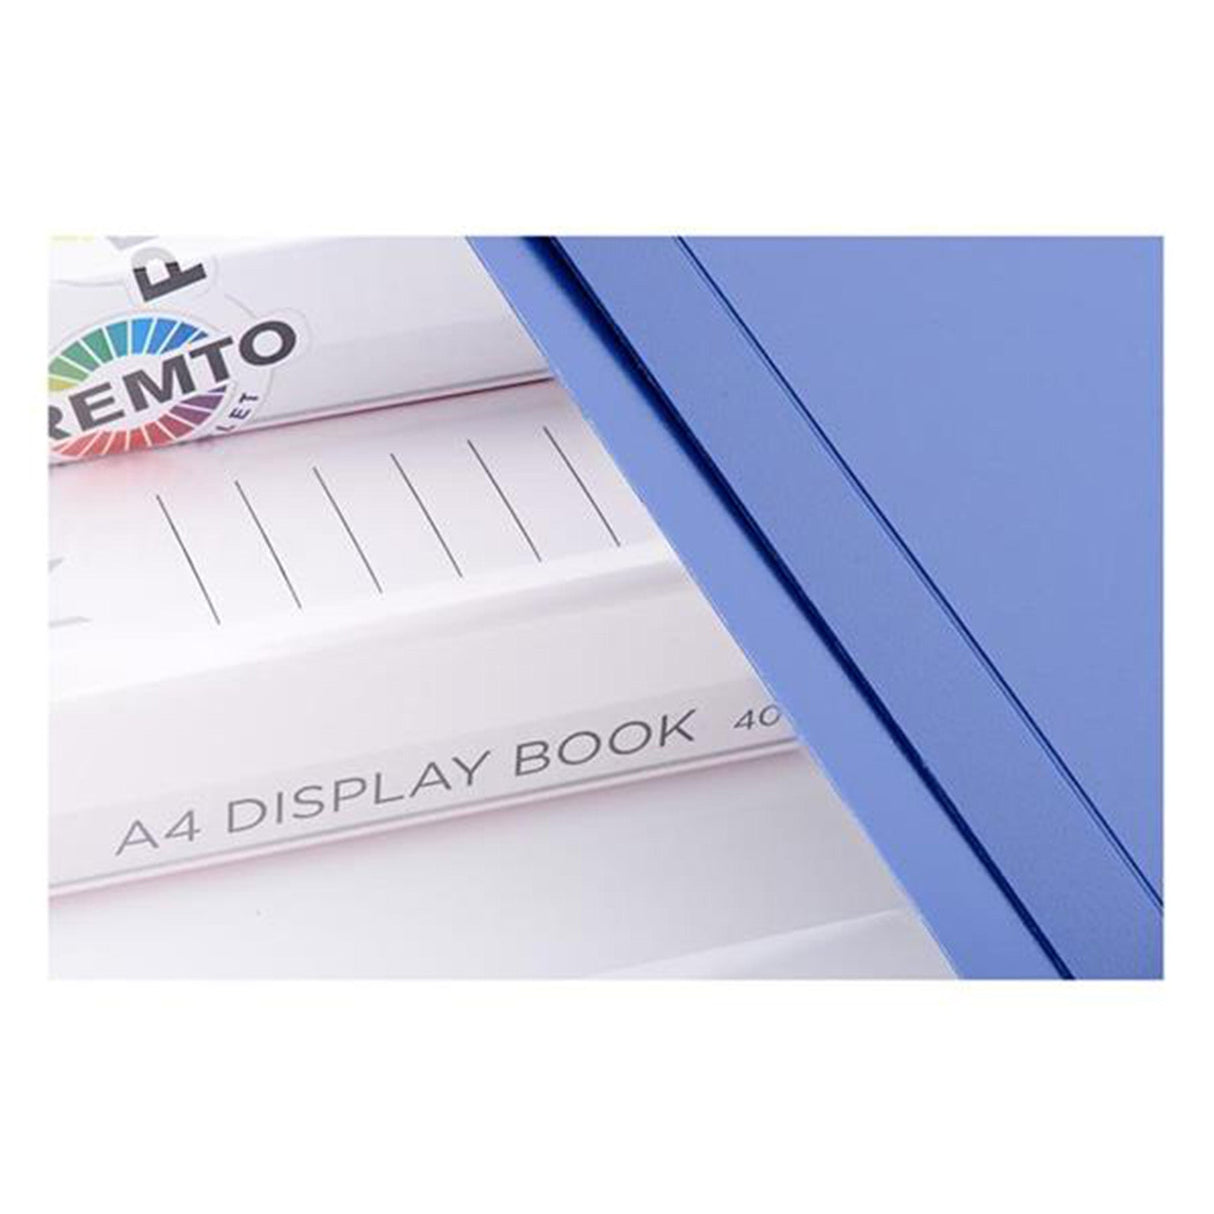 Premto A4 40 Pocket Display Book - Admiral Blue-Display Books-Premto|StationeryShop.co.uk